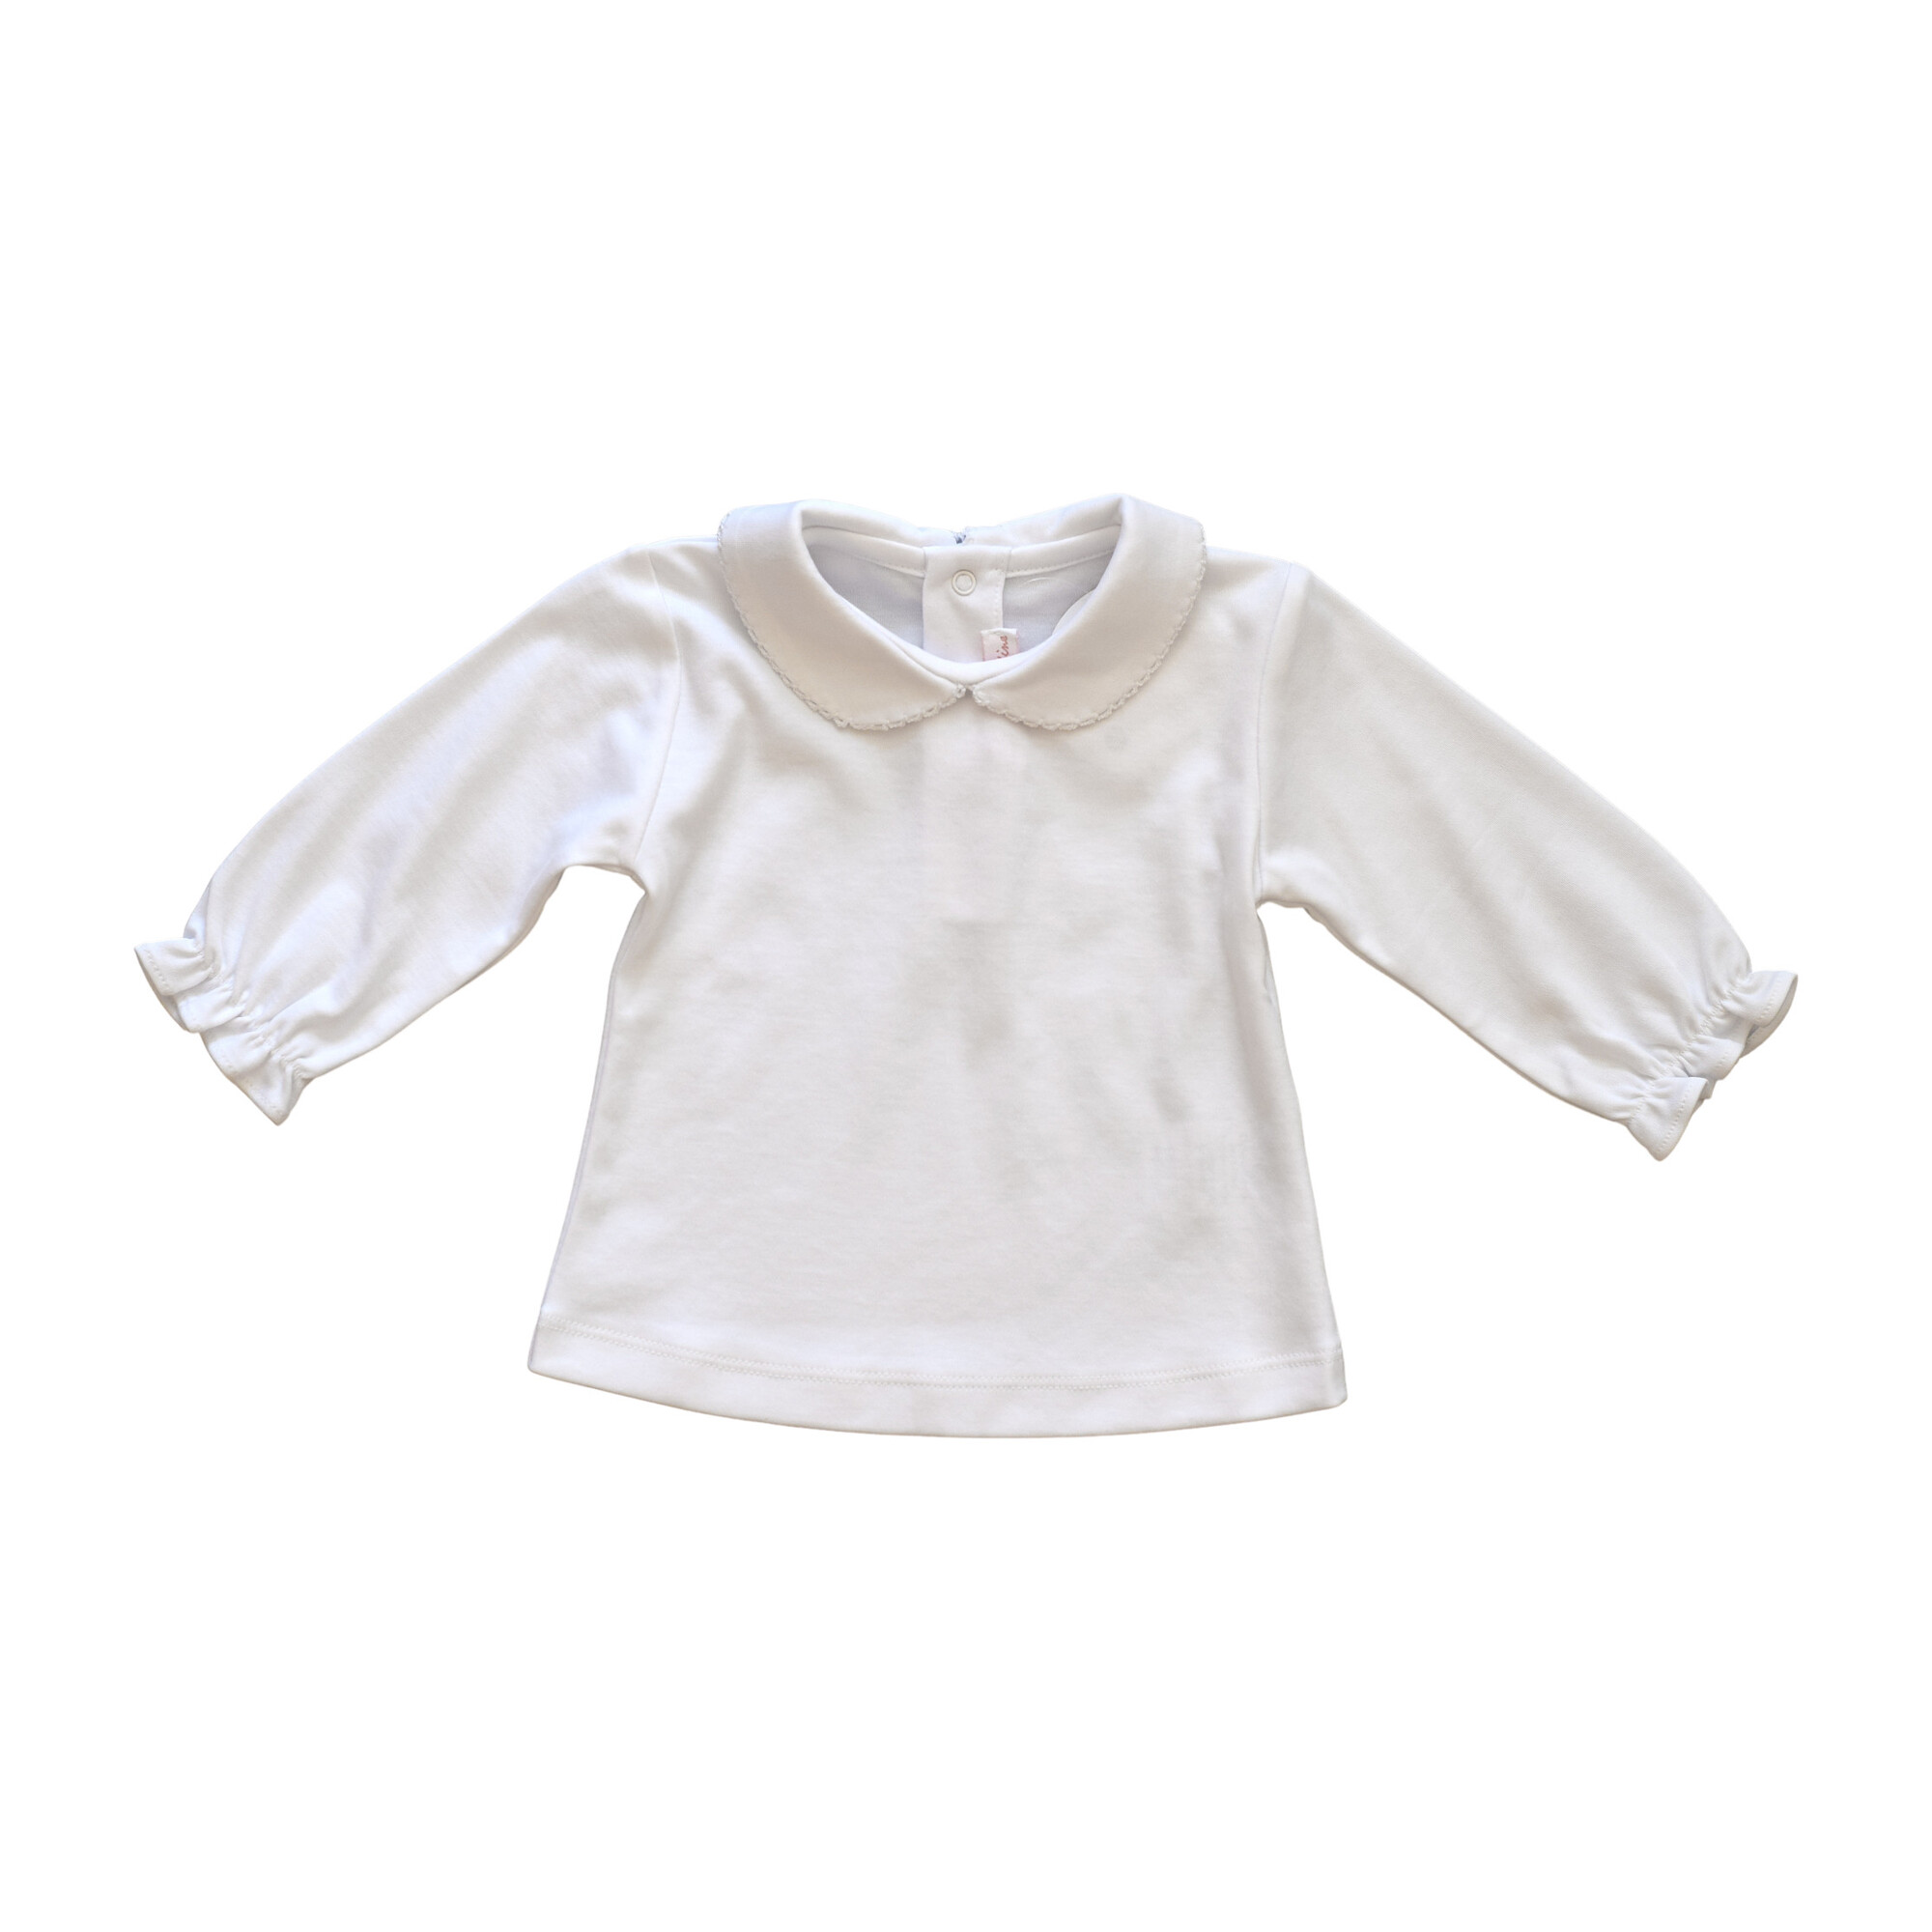 White Peter Pan Top - Baby Girl Clothing Tops - Maisonette